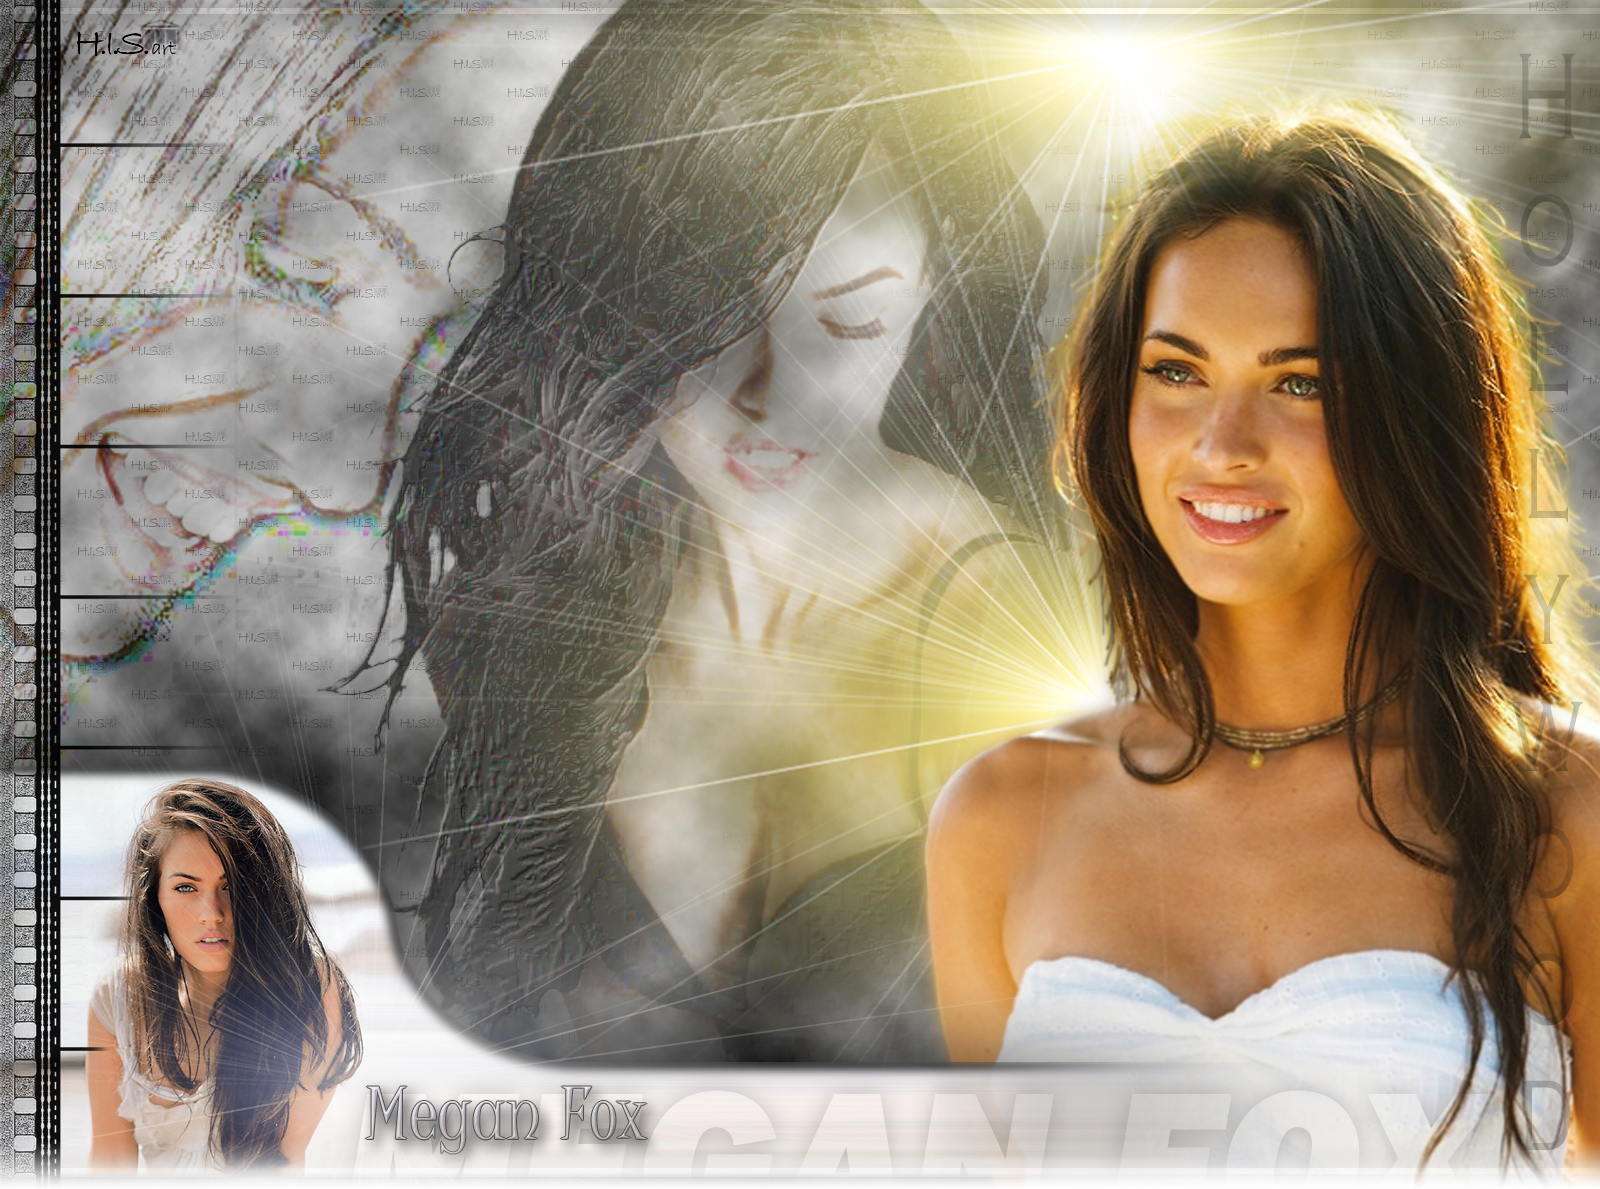 Megan Fox HD Wallpaper Wide Screen High Resolution Desktop Background